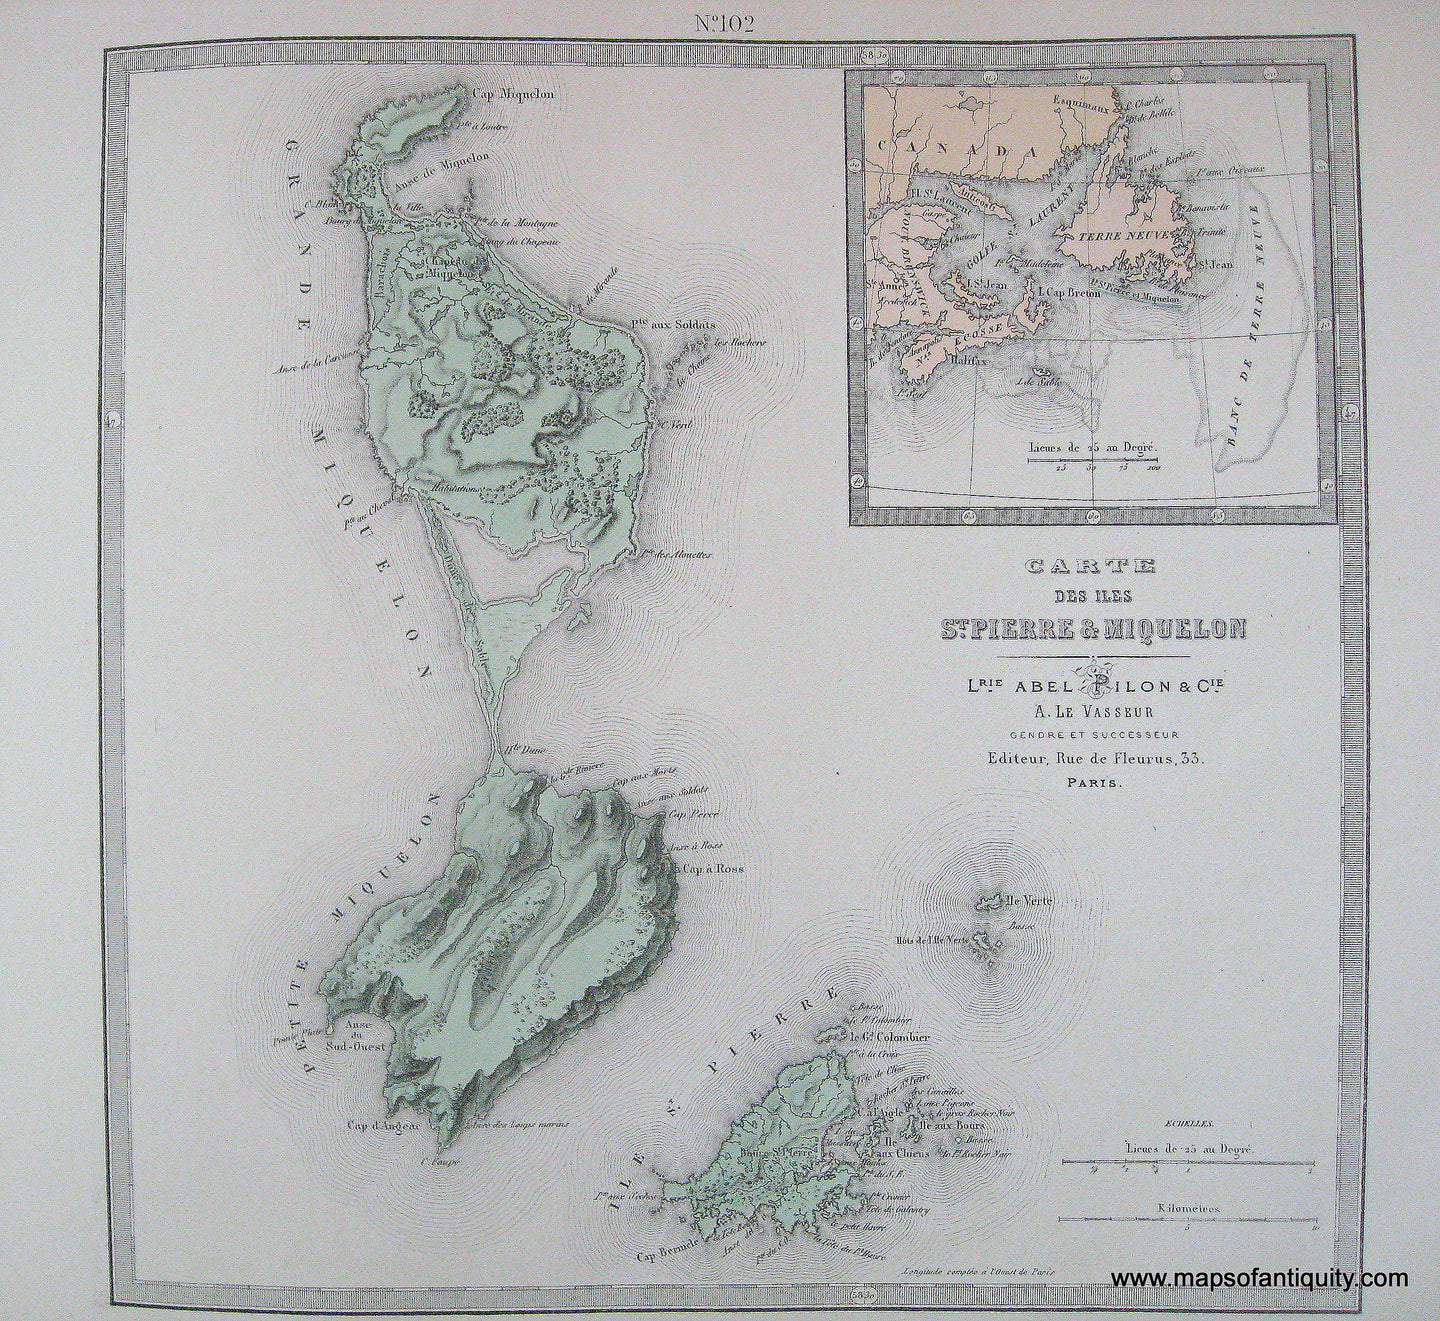 Antique-Hand-Colored-Map-Carte-des-iles-St.-Pierre-et-Miquelon-1877-Levasseur-Newfoundland-1800s-19th-century-Maps-of-Antiquity